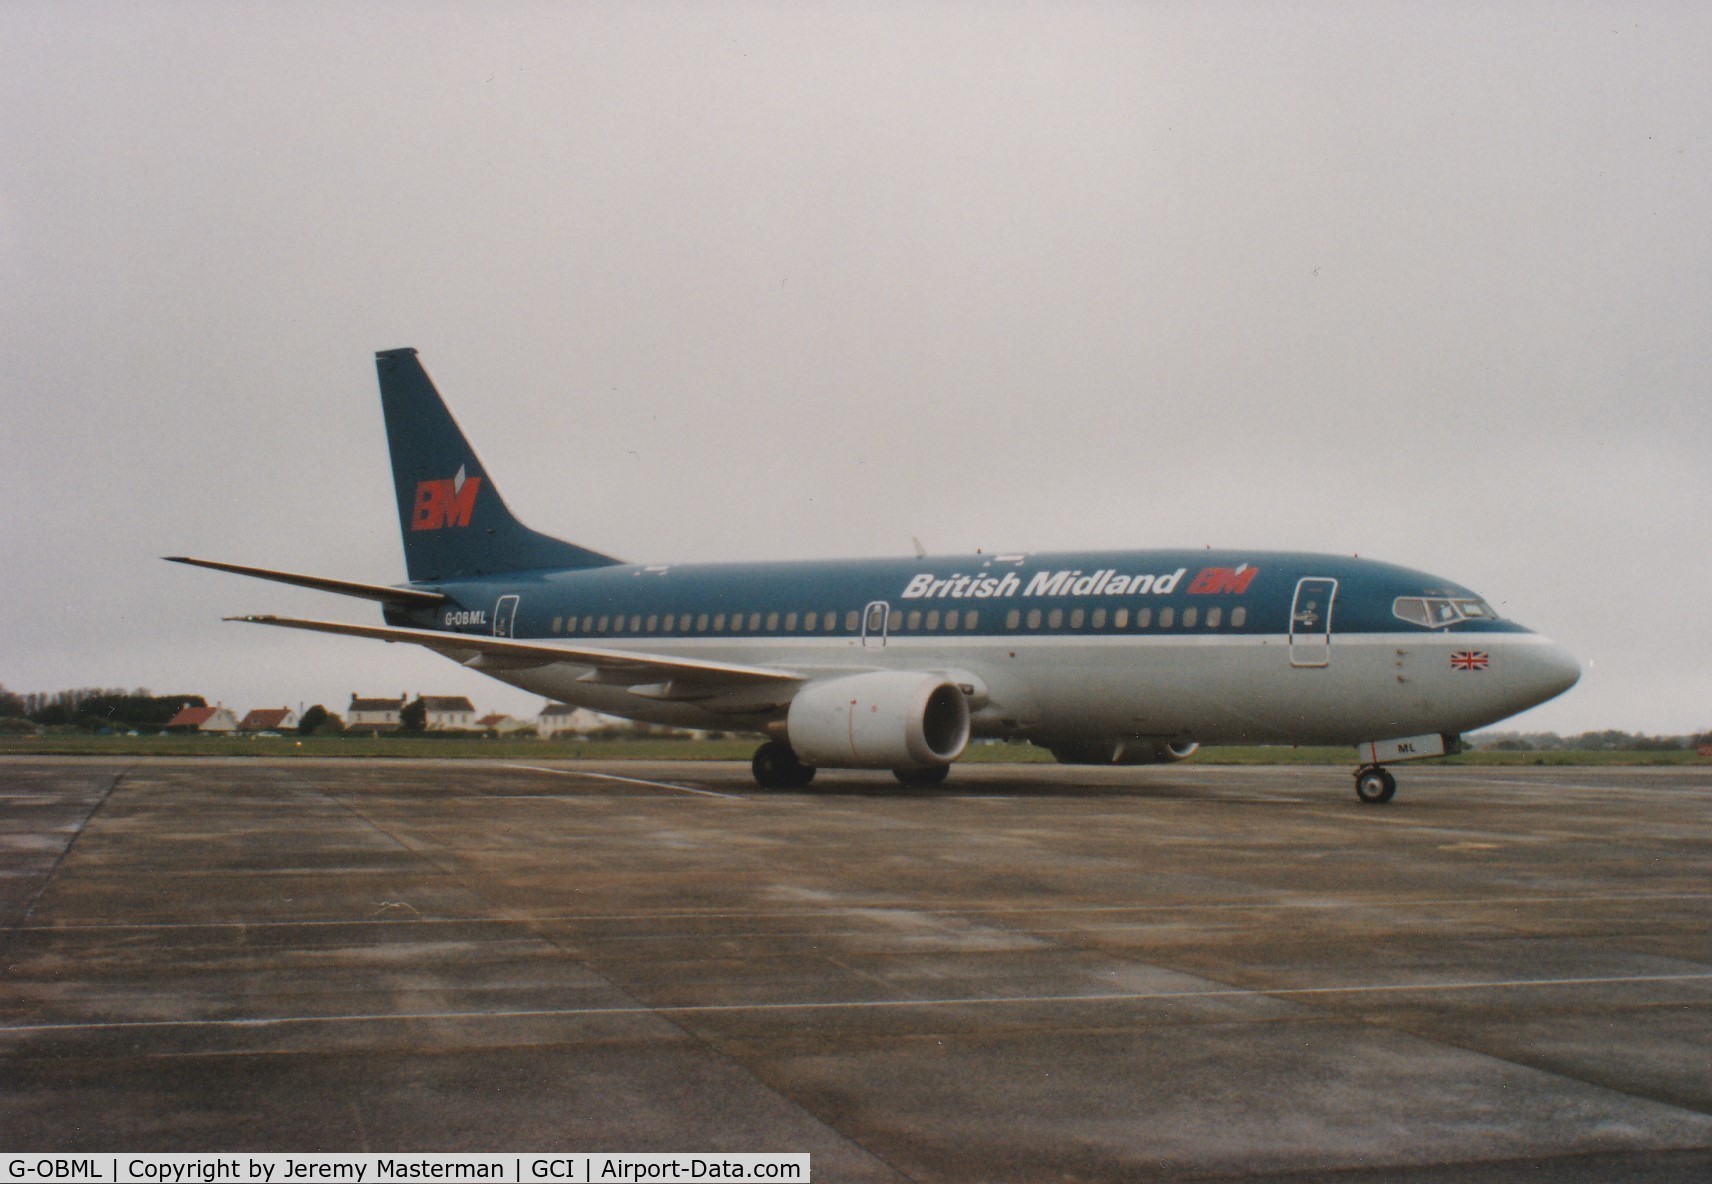 G-OBML, 1989 Boeing 737-3Q8 C/N 24300, British Midland Airways